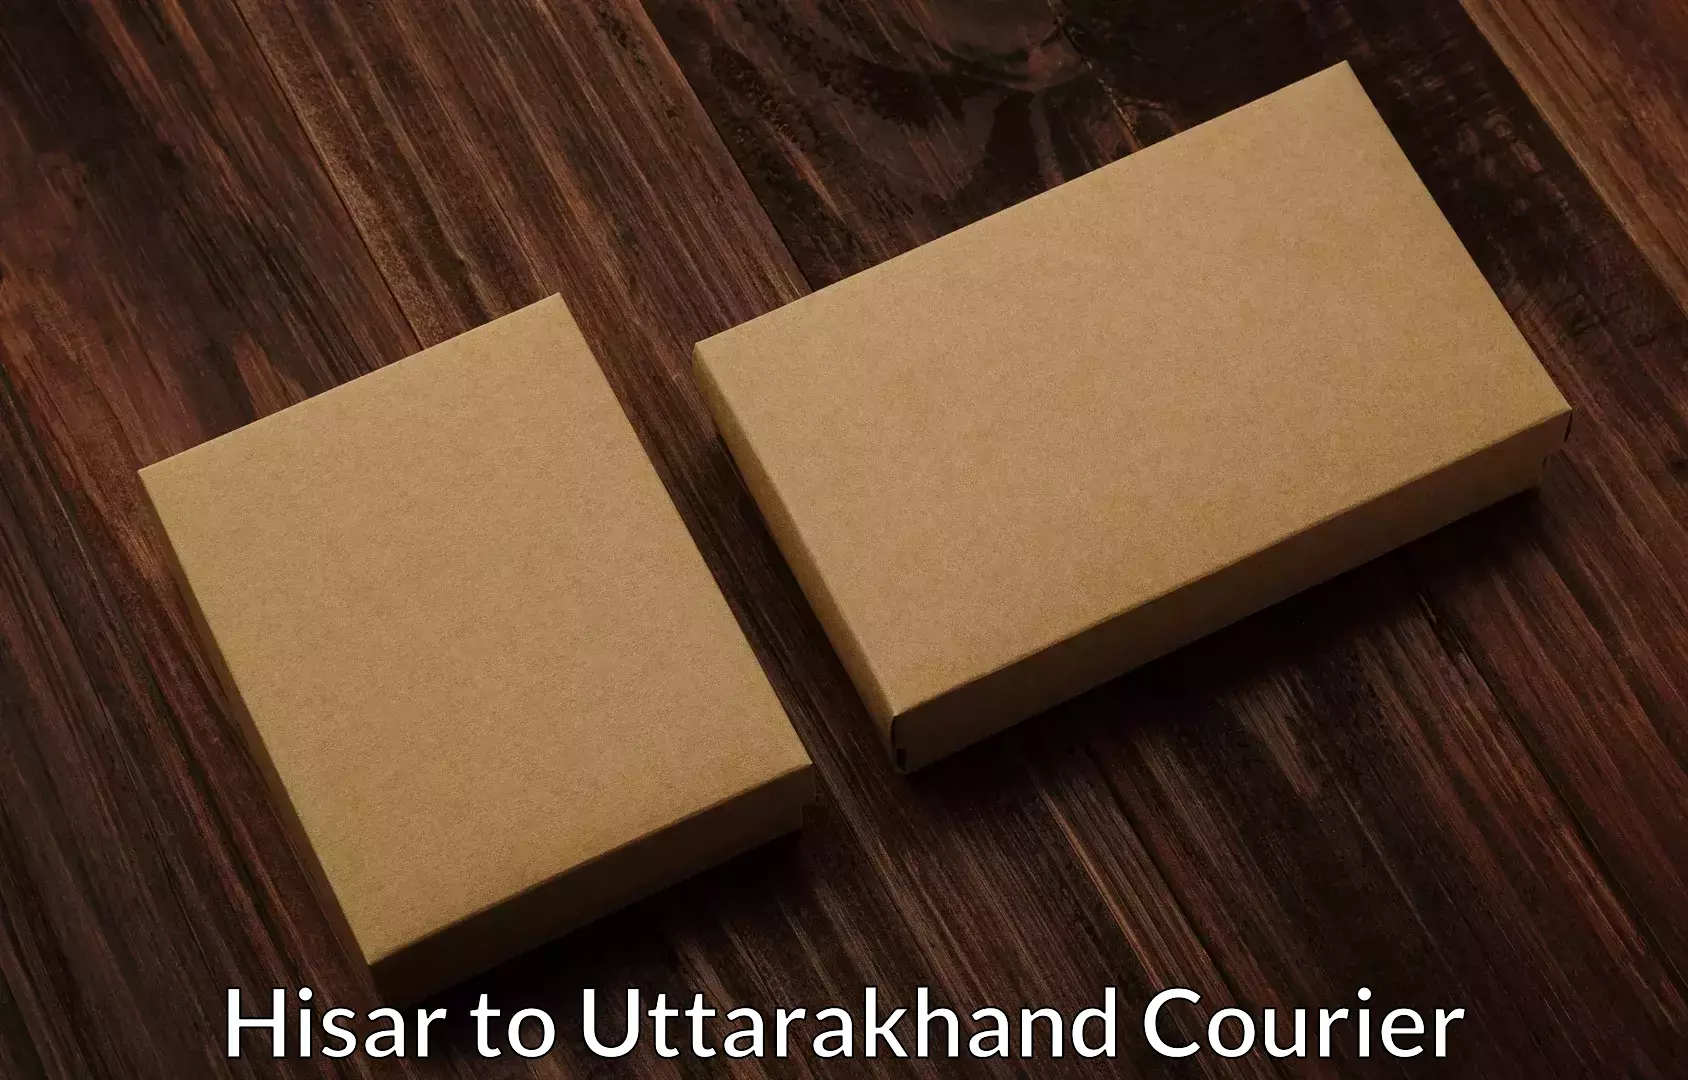 Safe household movers Hisar to Uttarakhand